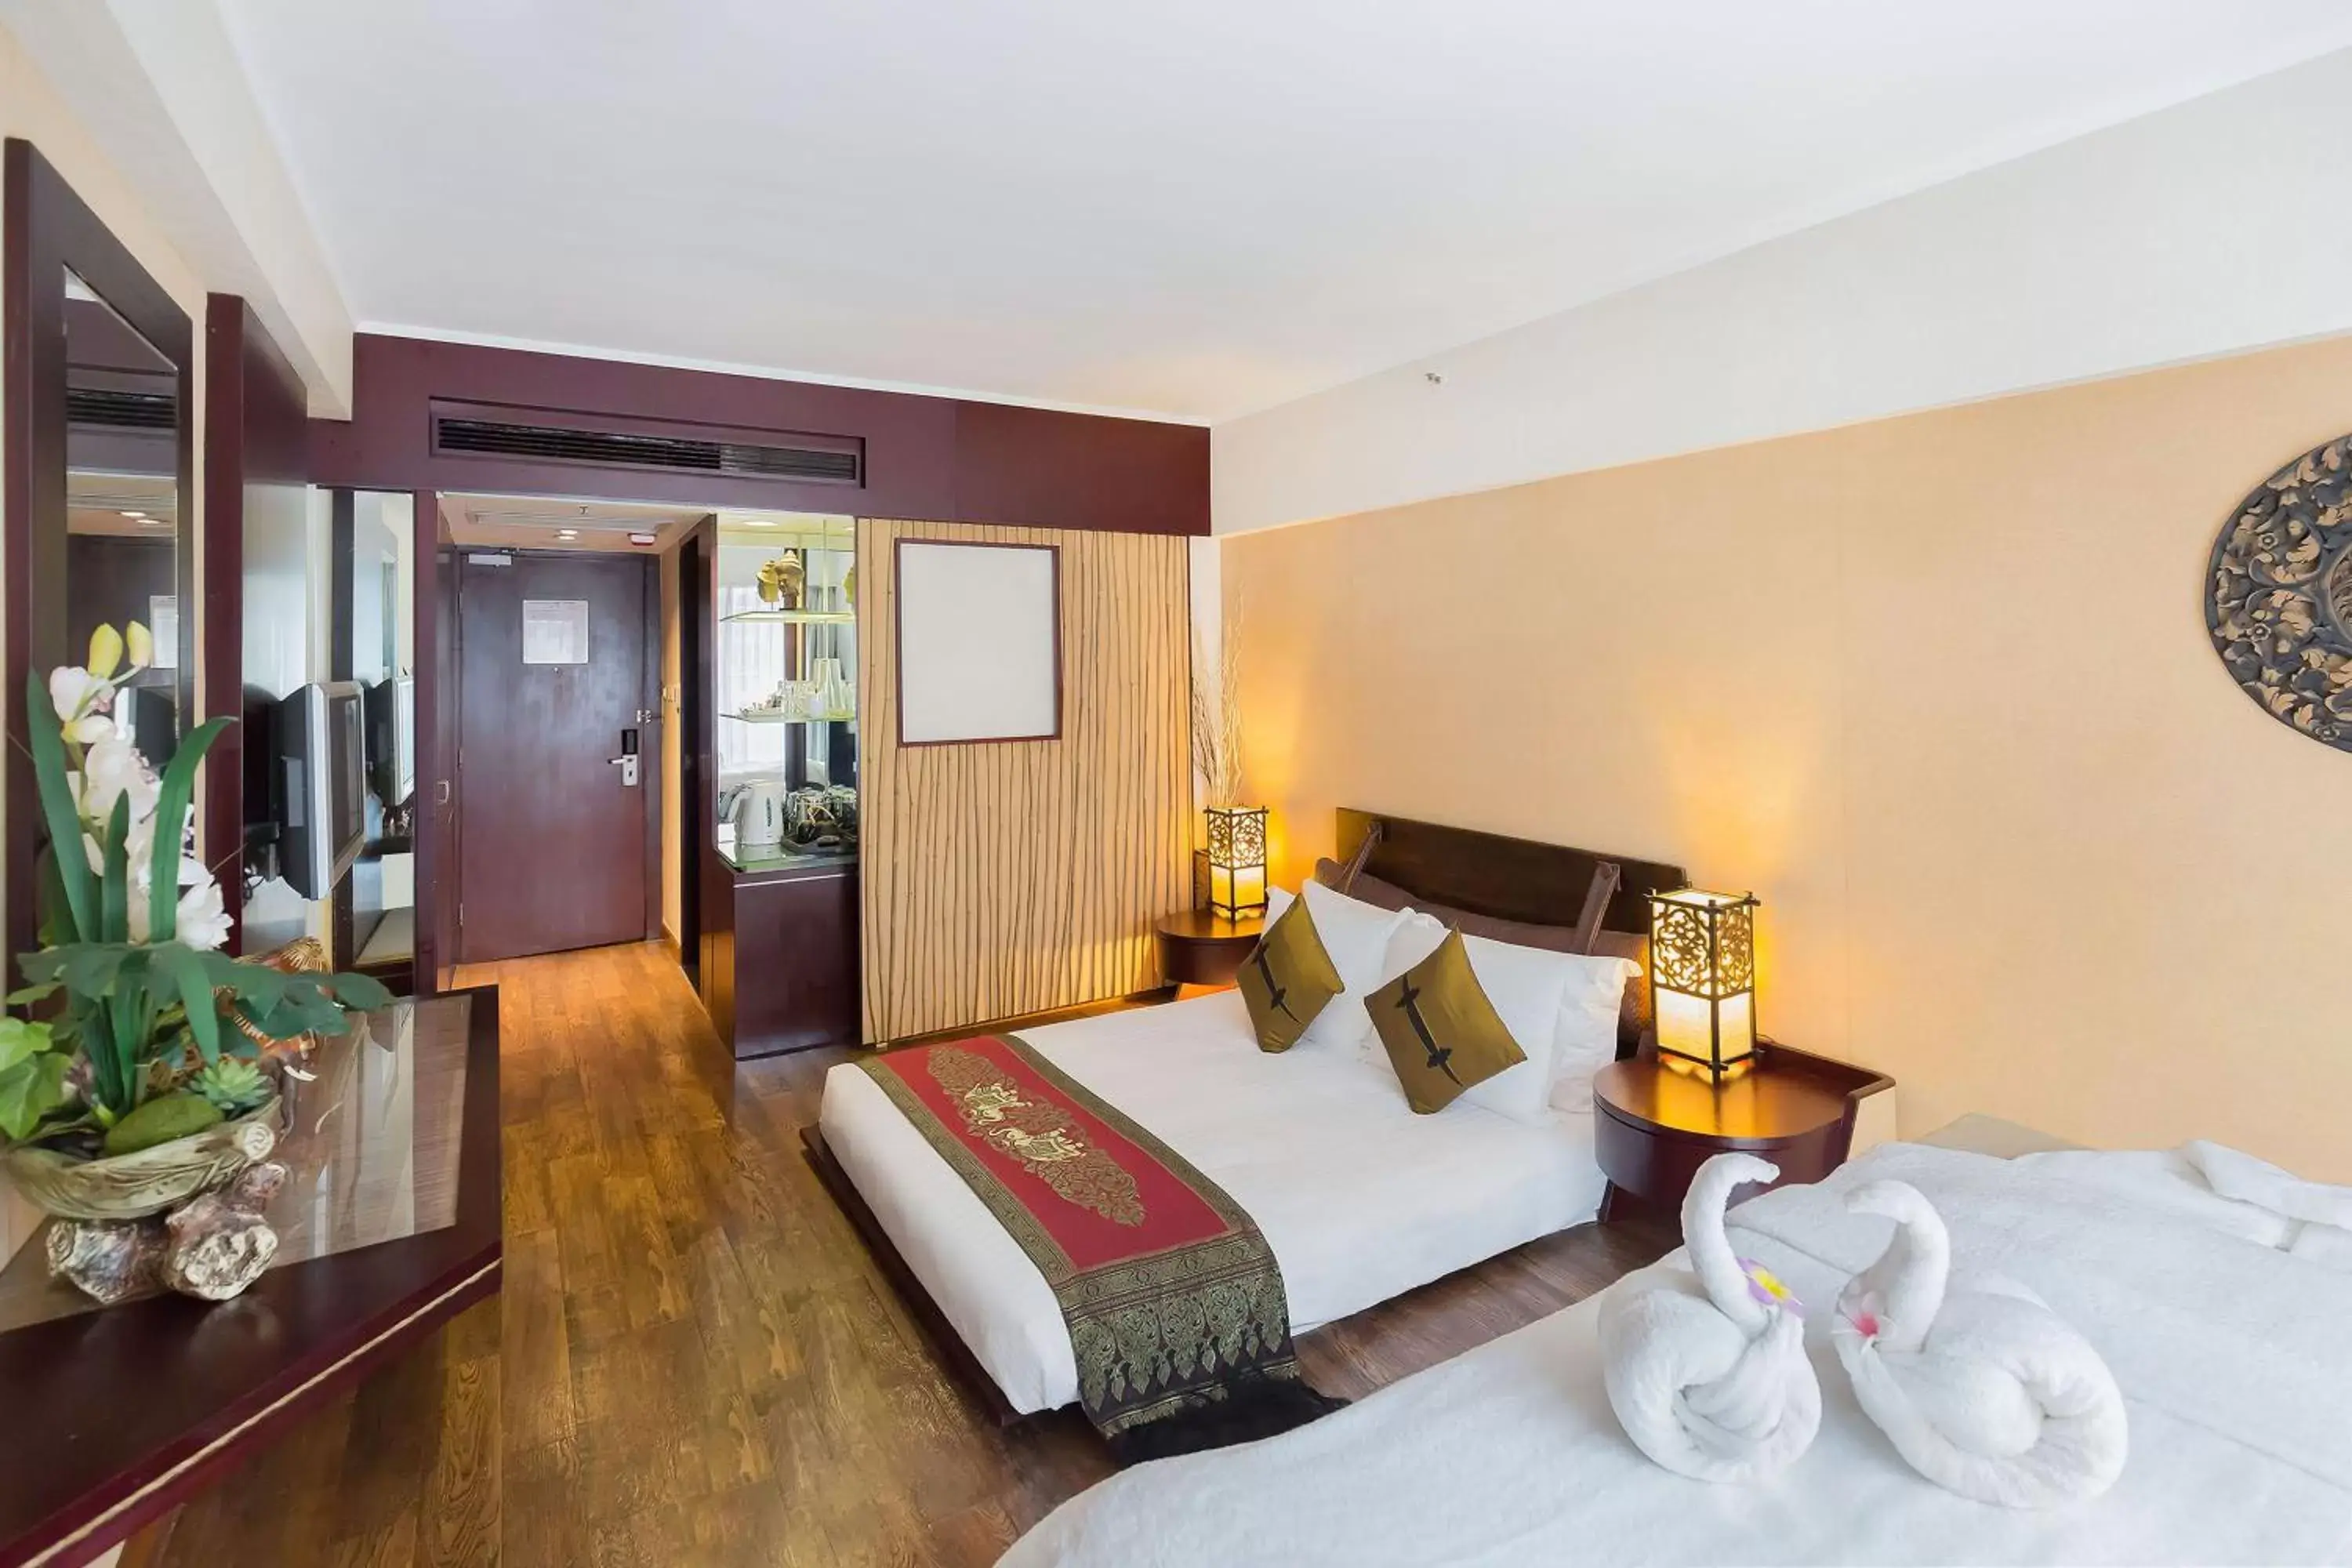 Bedroom in Regal Airport Hotel